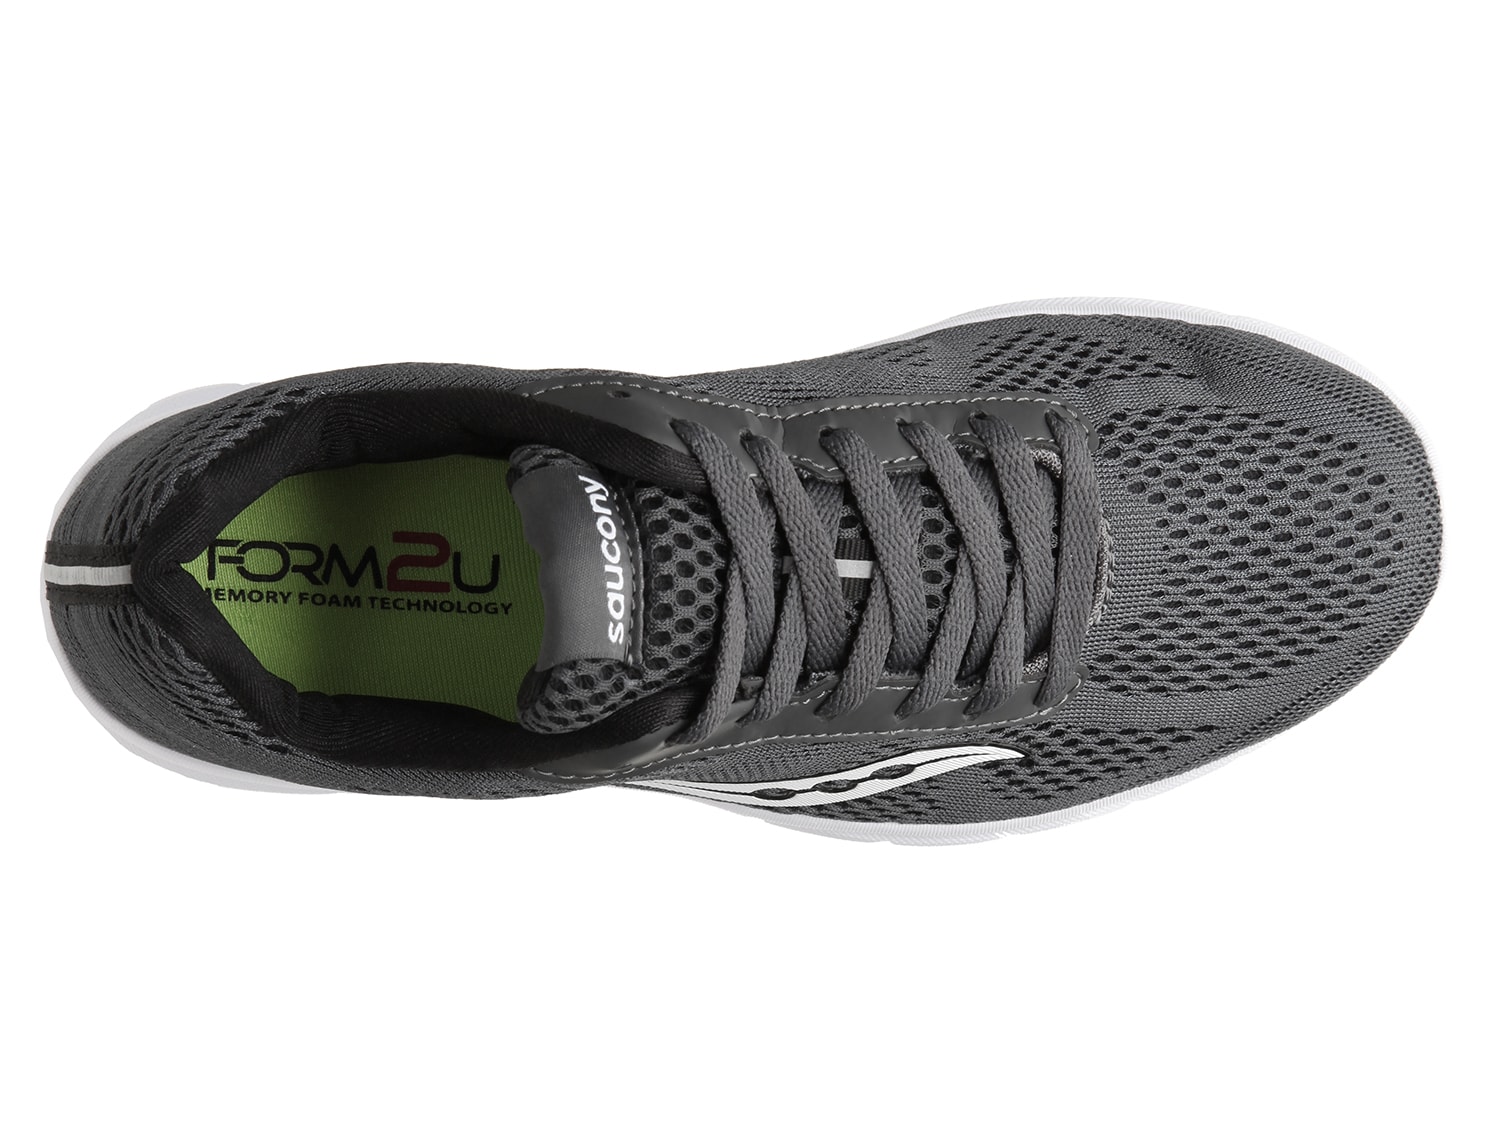 saucony grid ideal lightweight running shoe